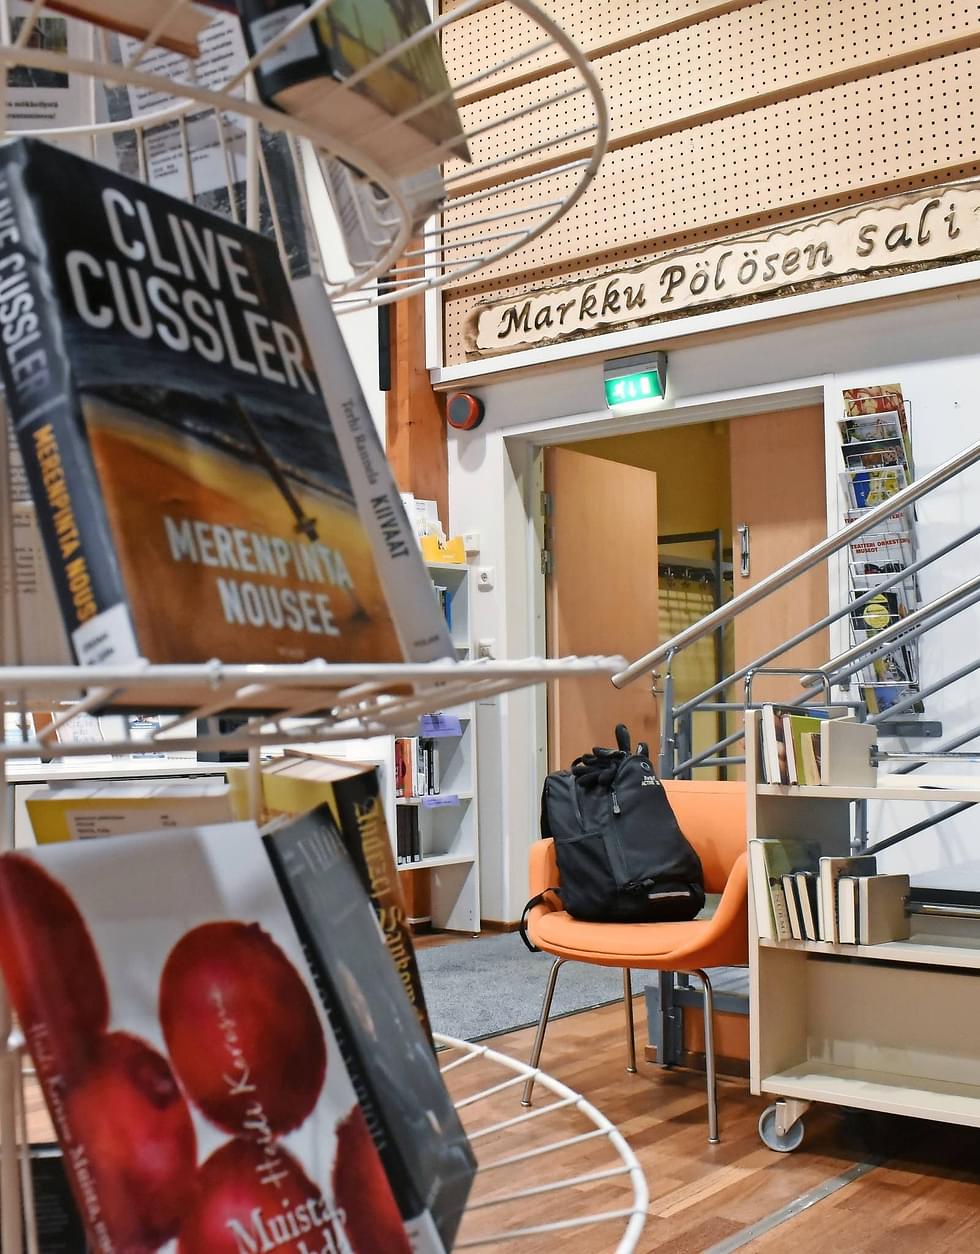 Yhtenä talouden sopeutumittamiskeinona Joensuun valtuustolle esitetään muutoksia kirjastoihin. Uimaharjun kirjasto siirtyisi suunnitelmissa mahdollisuuksien mukaan koululle.